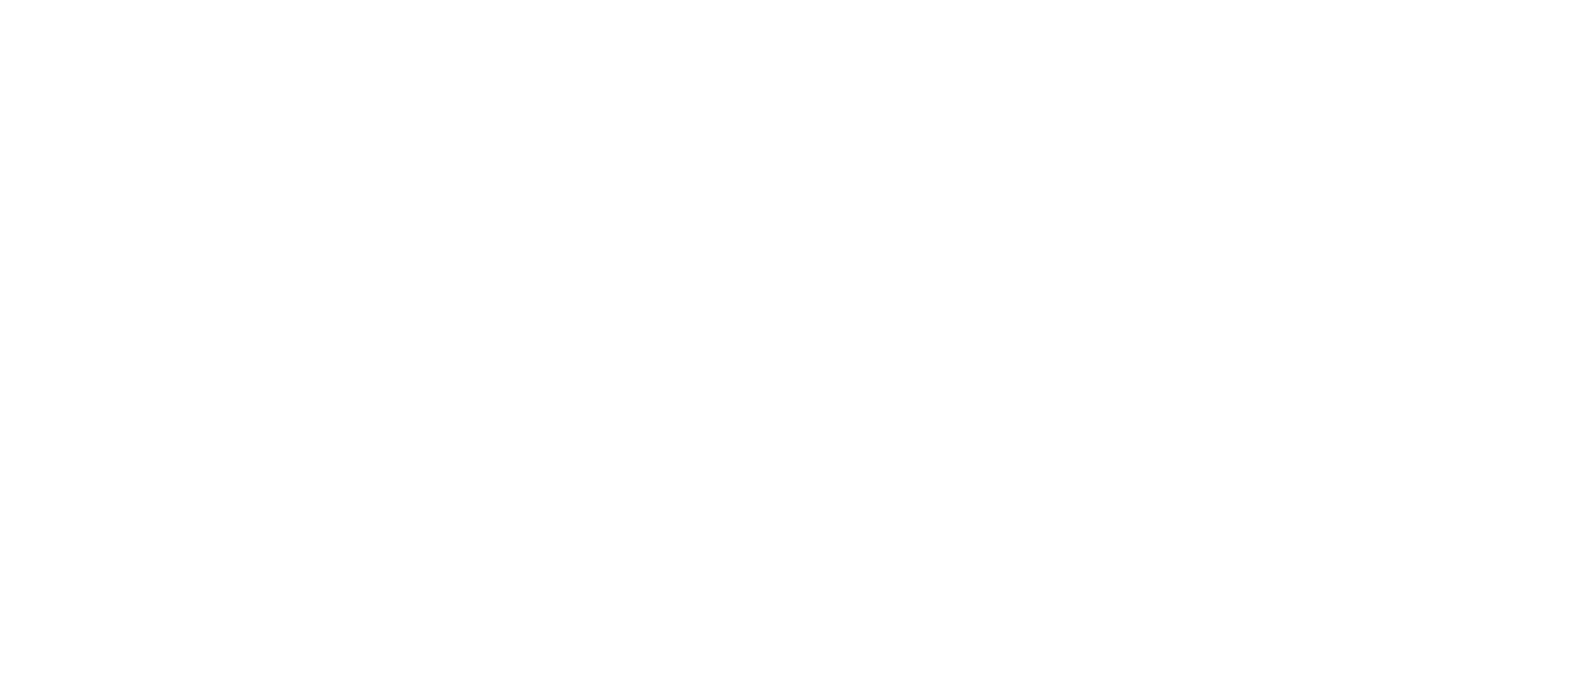 Celink logo white